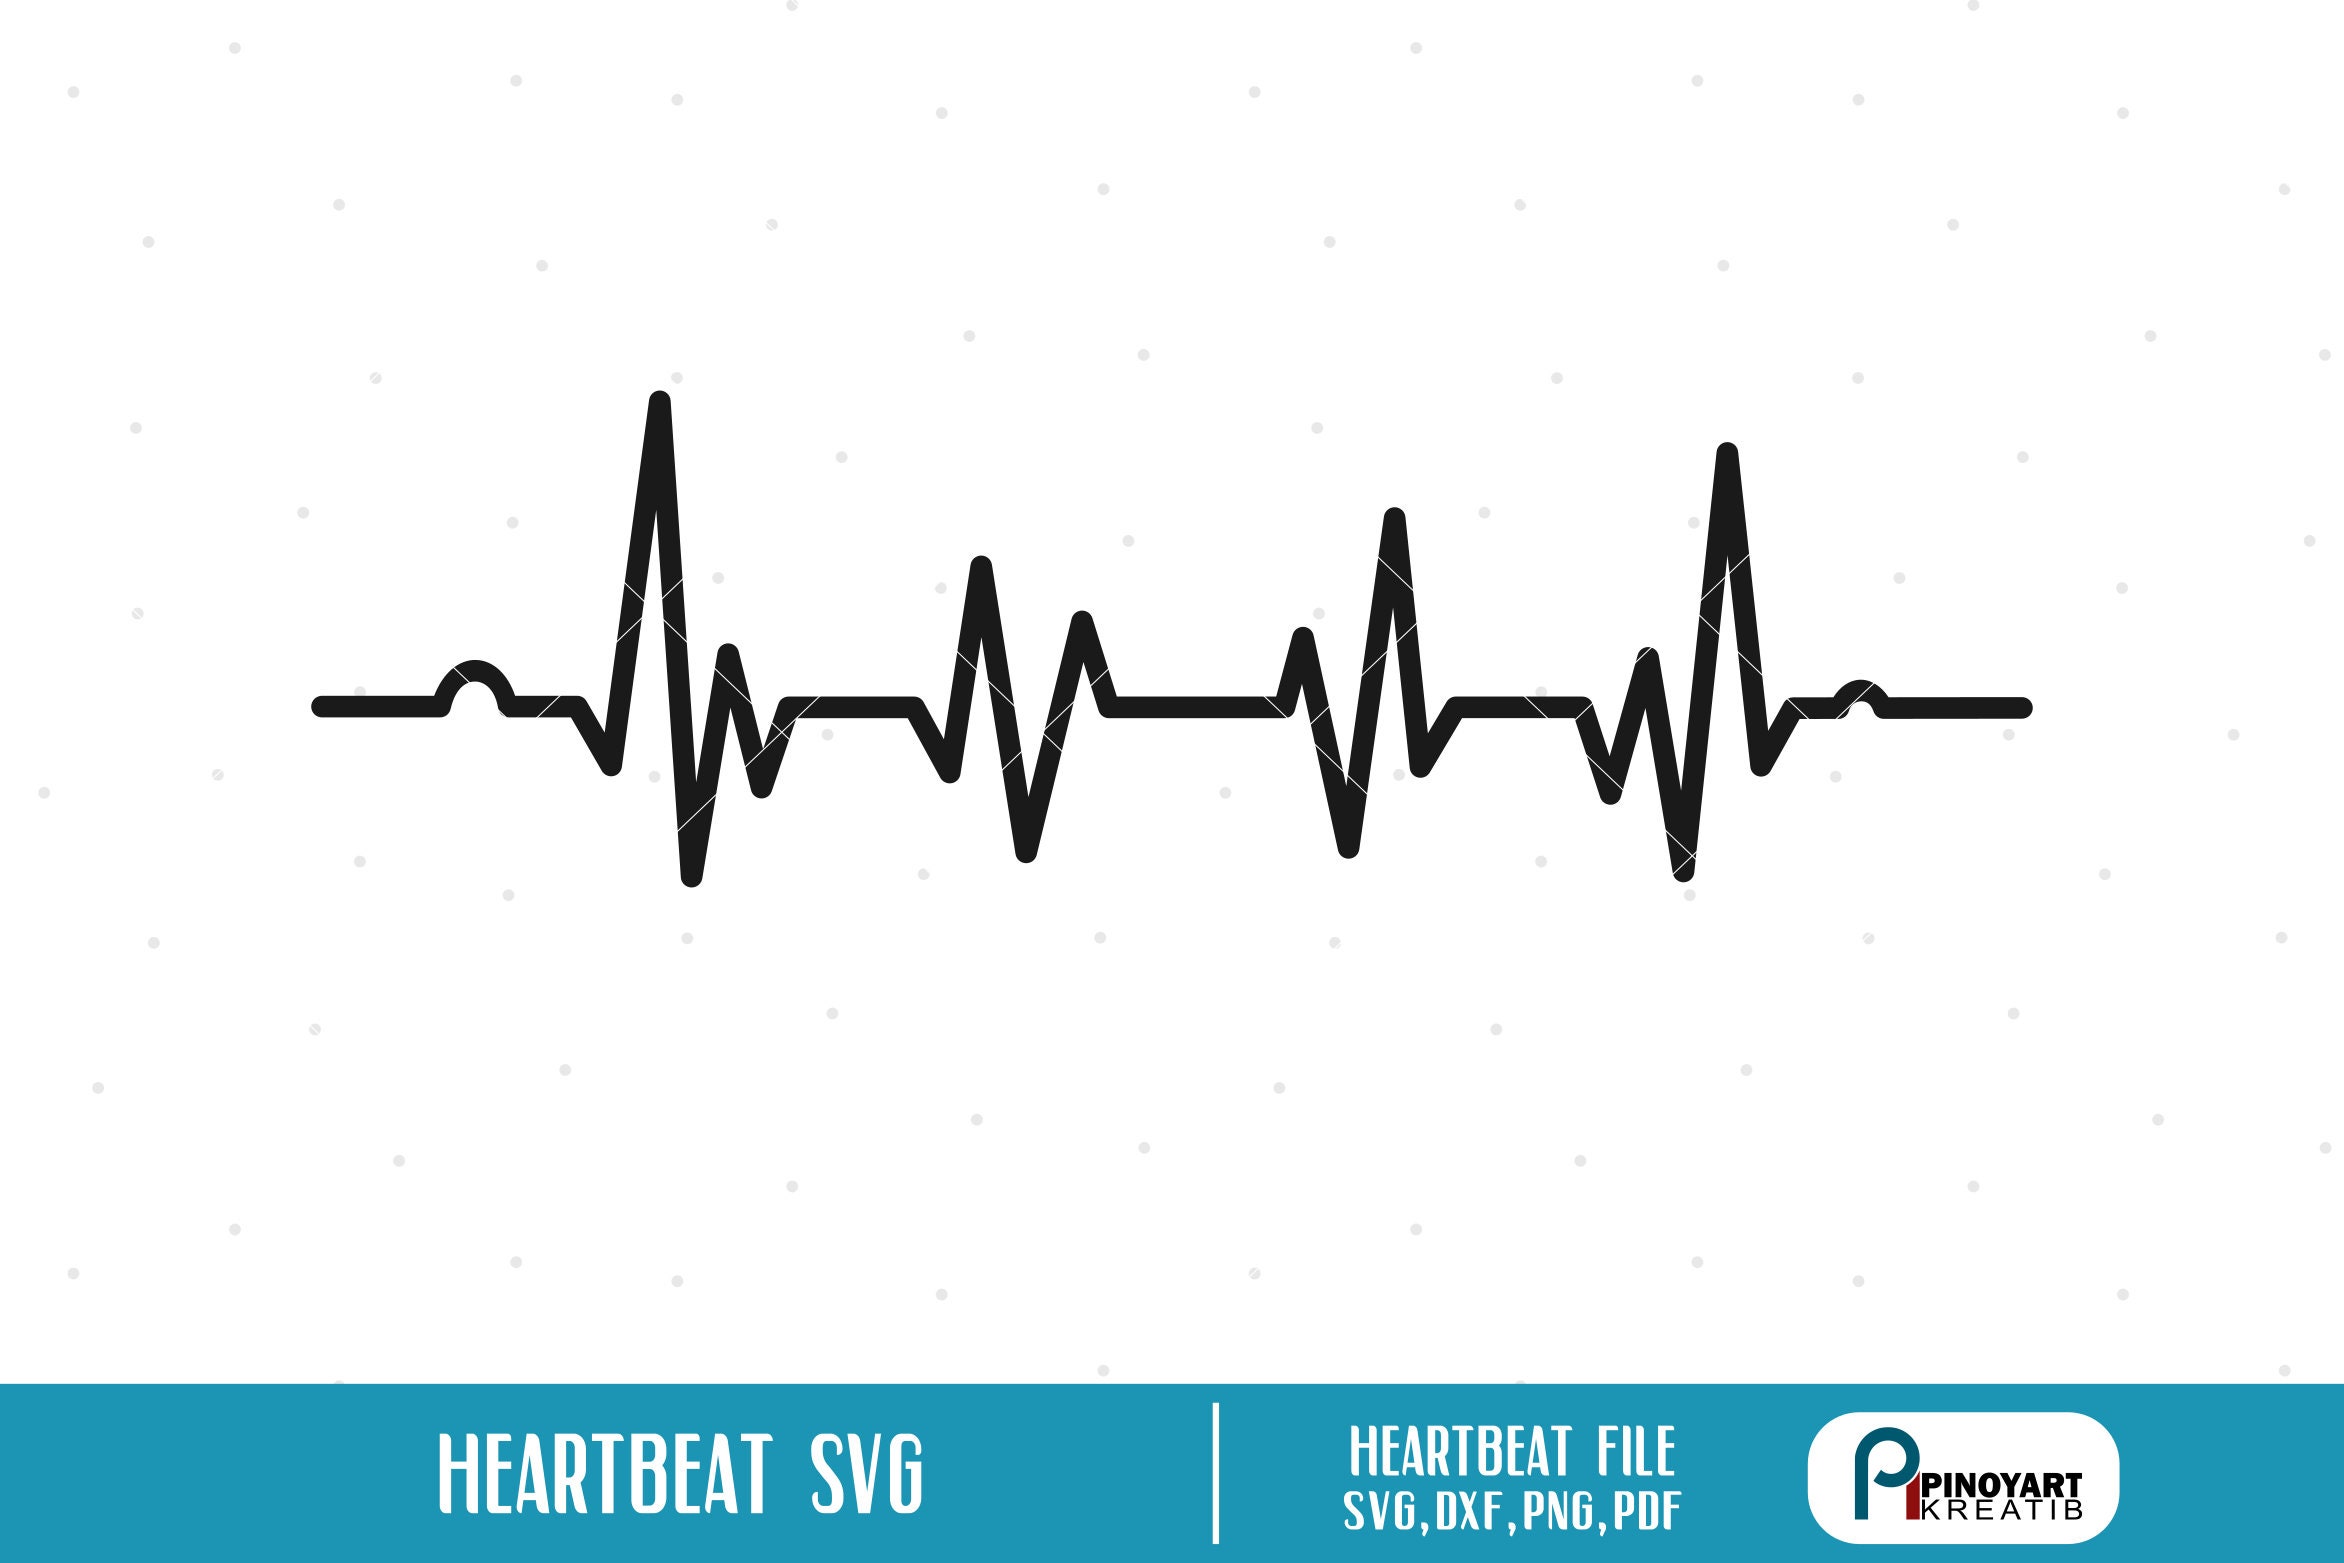 Female irregular heartbeat fan images